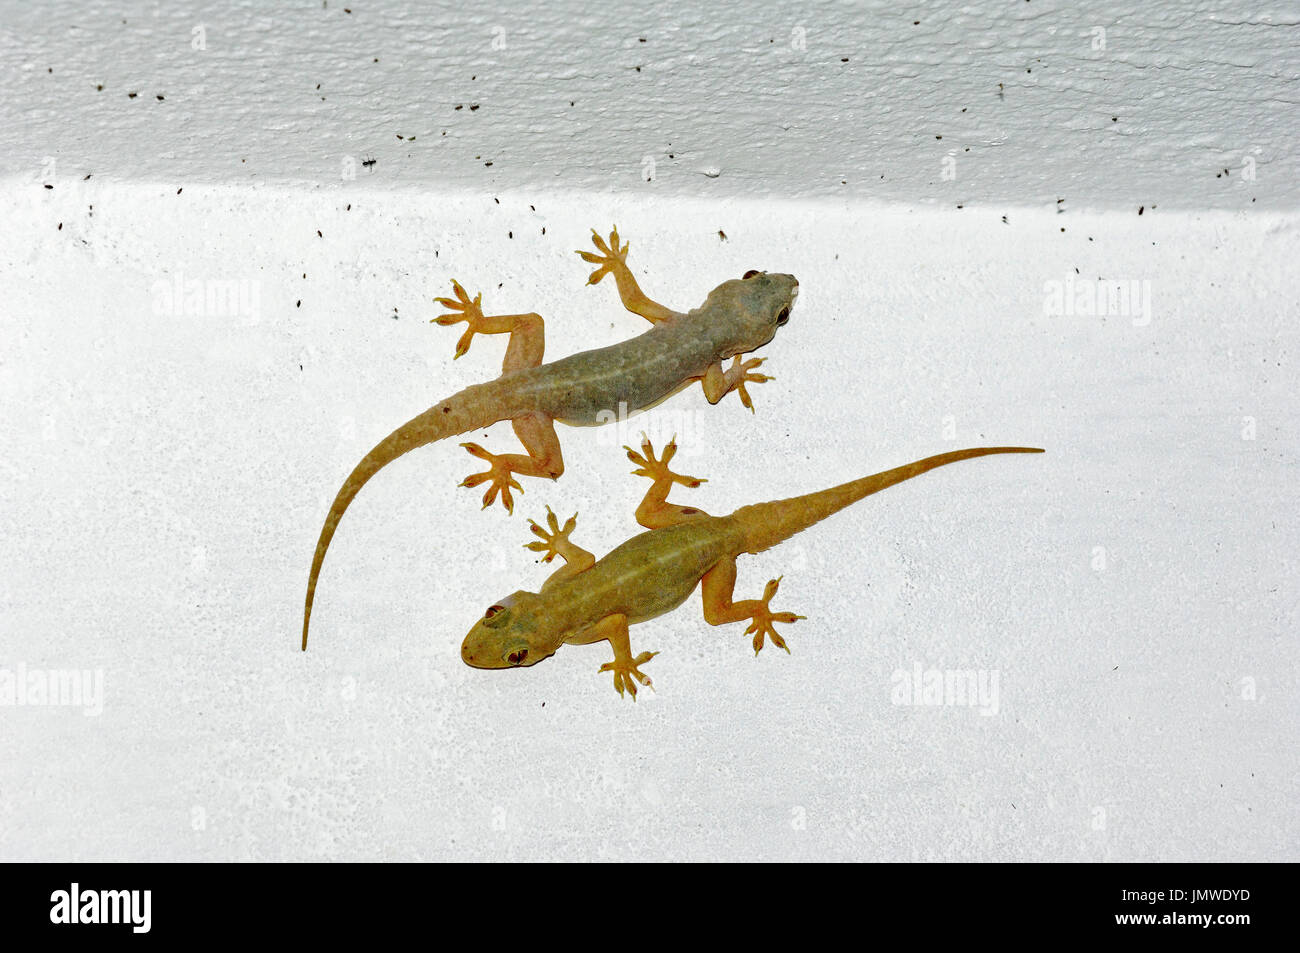 Maison commune de geckos sur mur de la maison, du Rajasthan, Inde / (Hemidactylus frenatus) / gecko à queue épineuse House | Asiatische Hausgeckos Banque D'Images